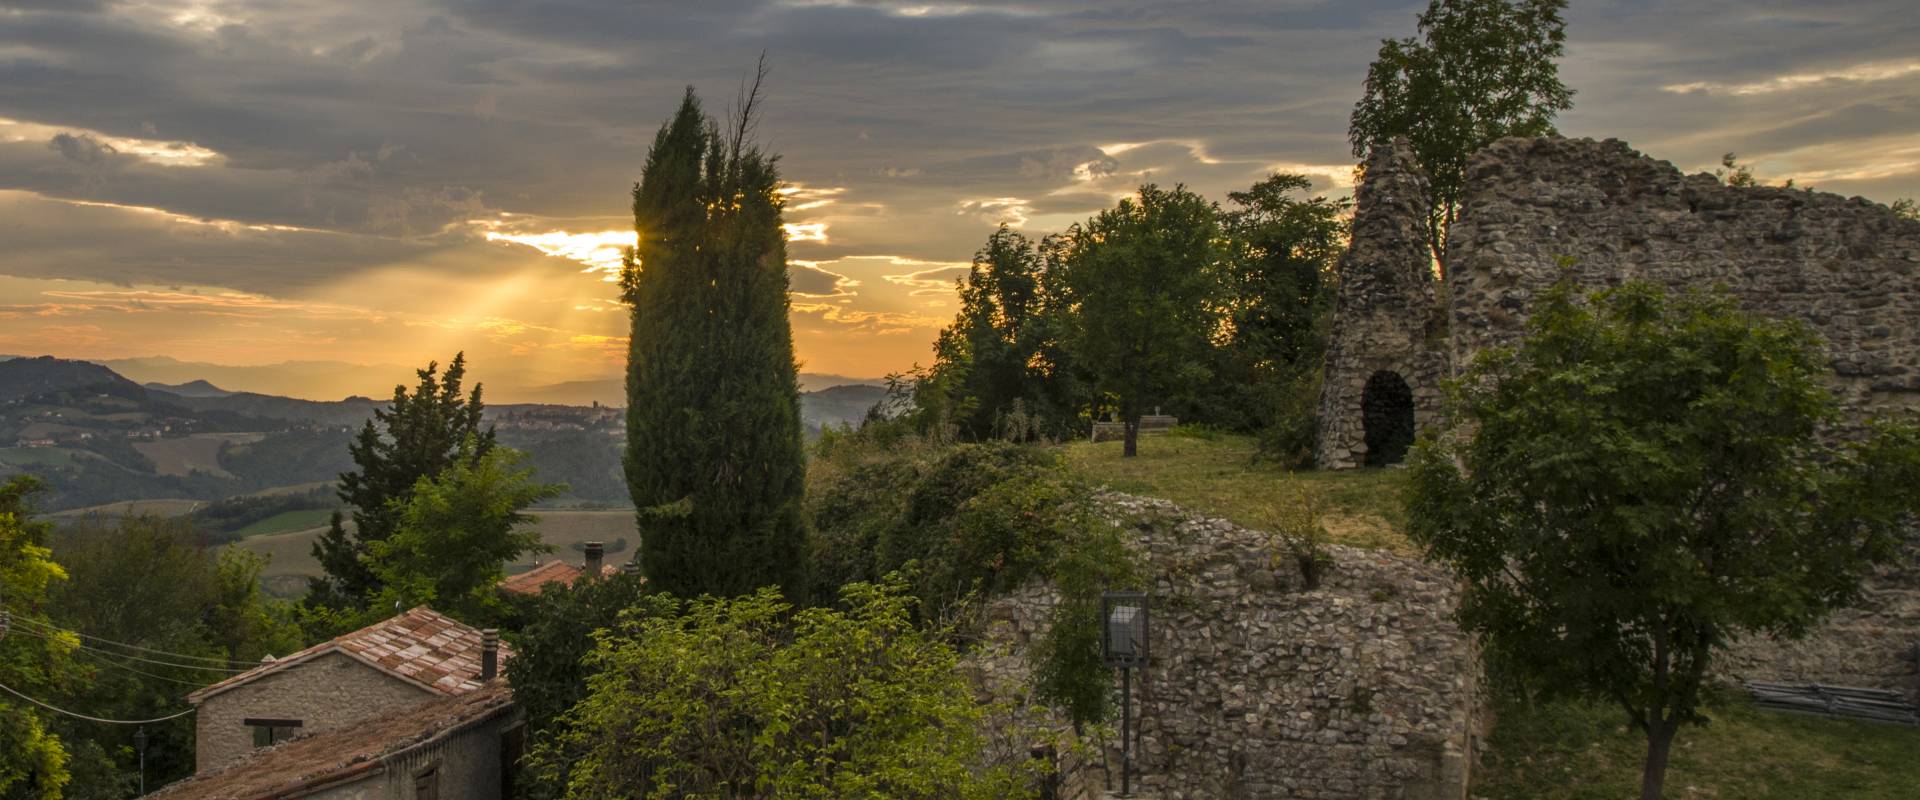 S.Giovanni in Galilea, resti della Rocca Malatestiana, al tramonto foto di Marco della pasqua